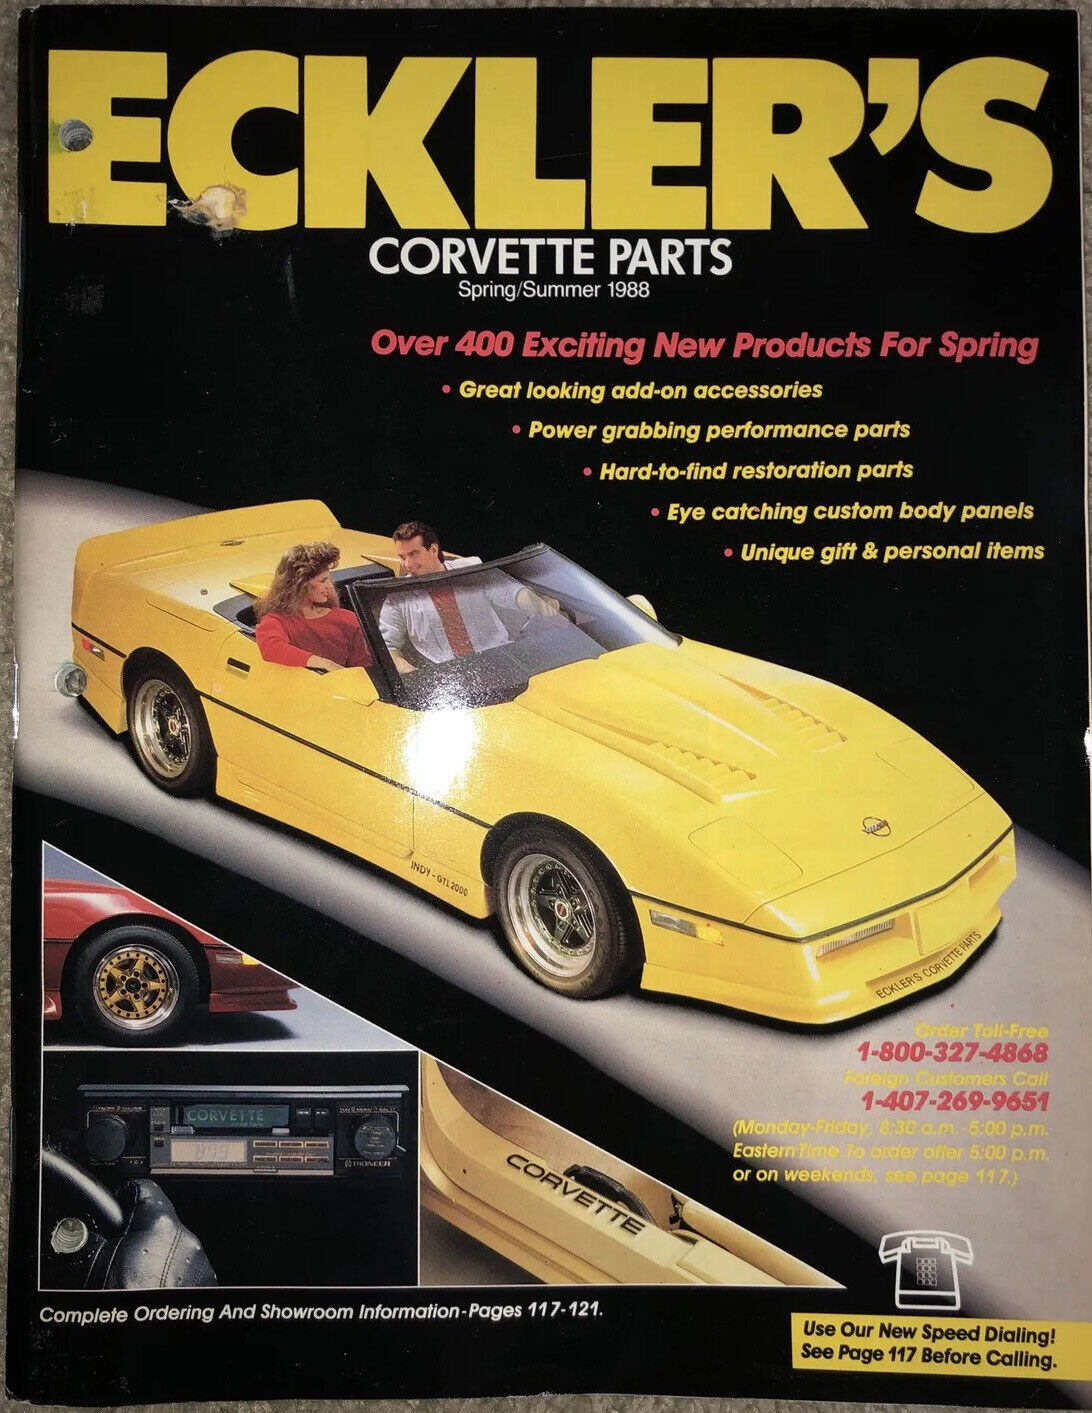 Eckler’s Corvette Parts Spring/Summer 1988 Catalog